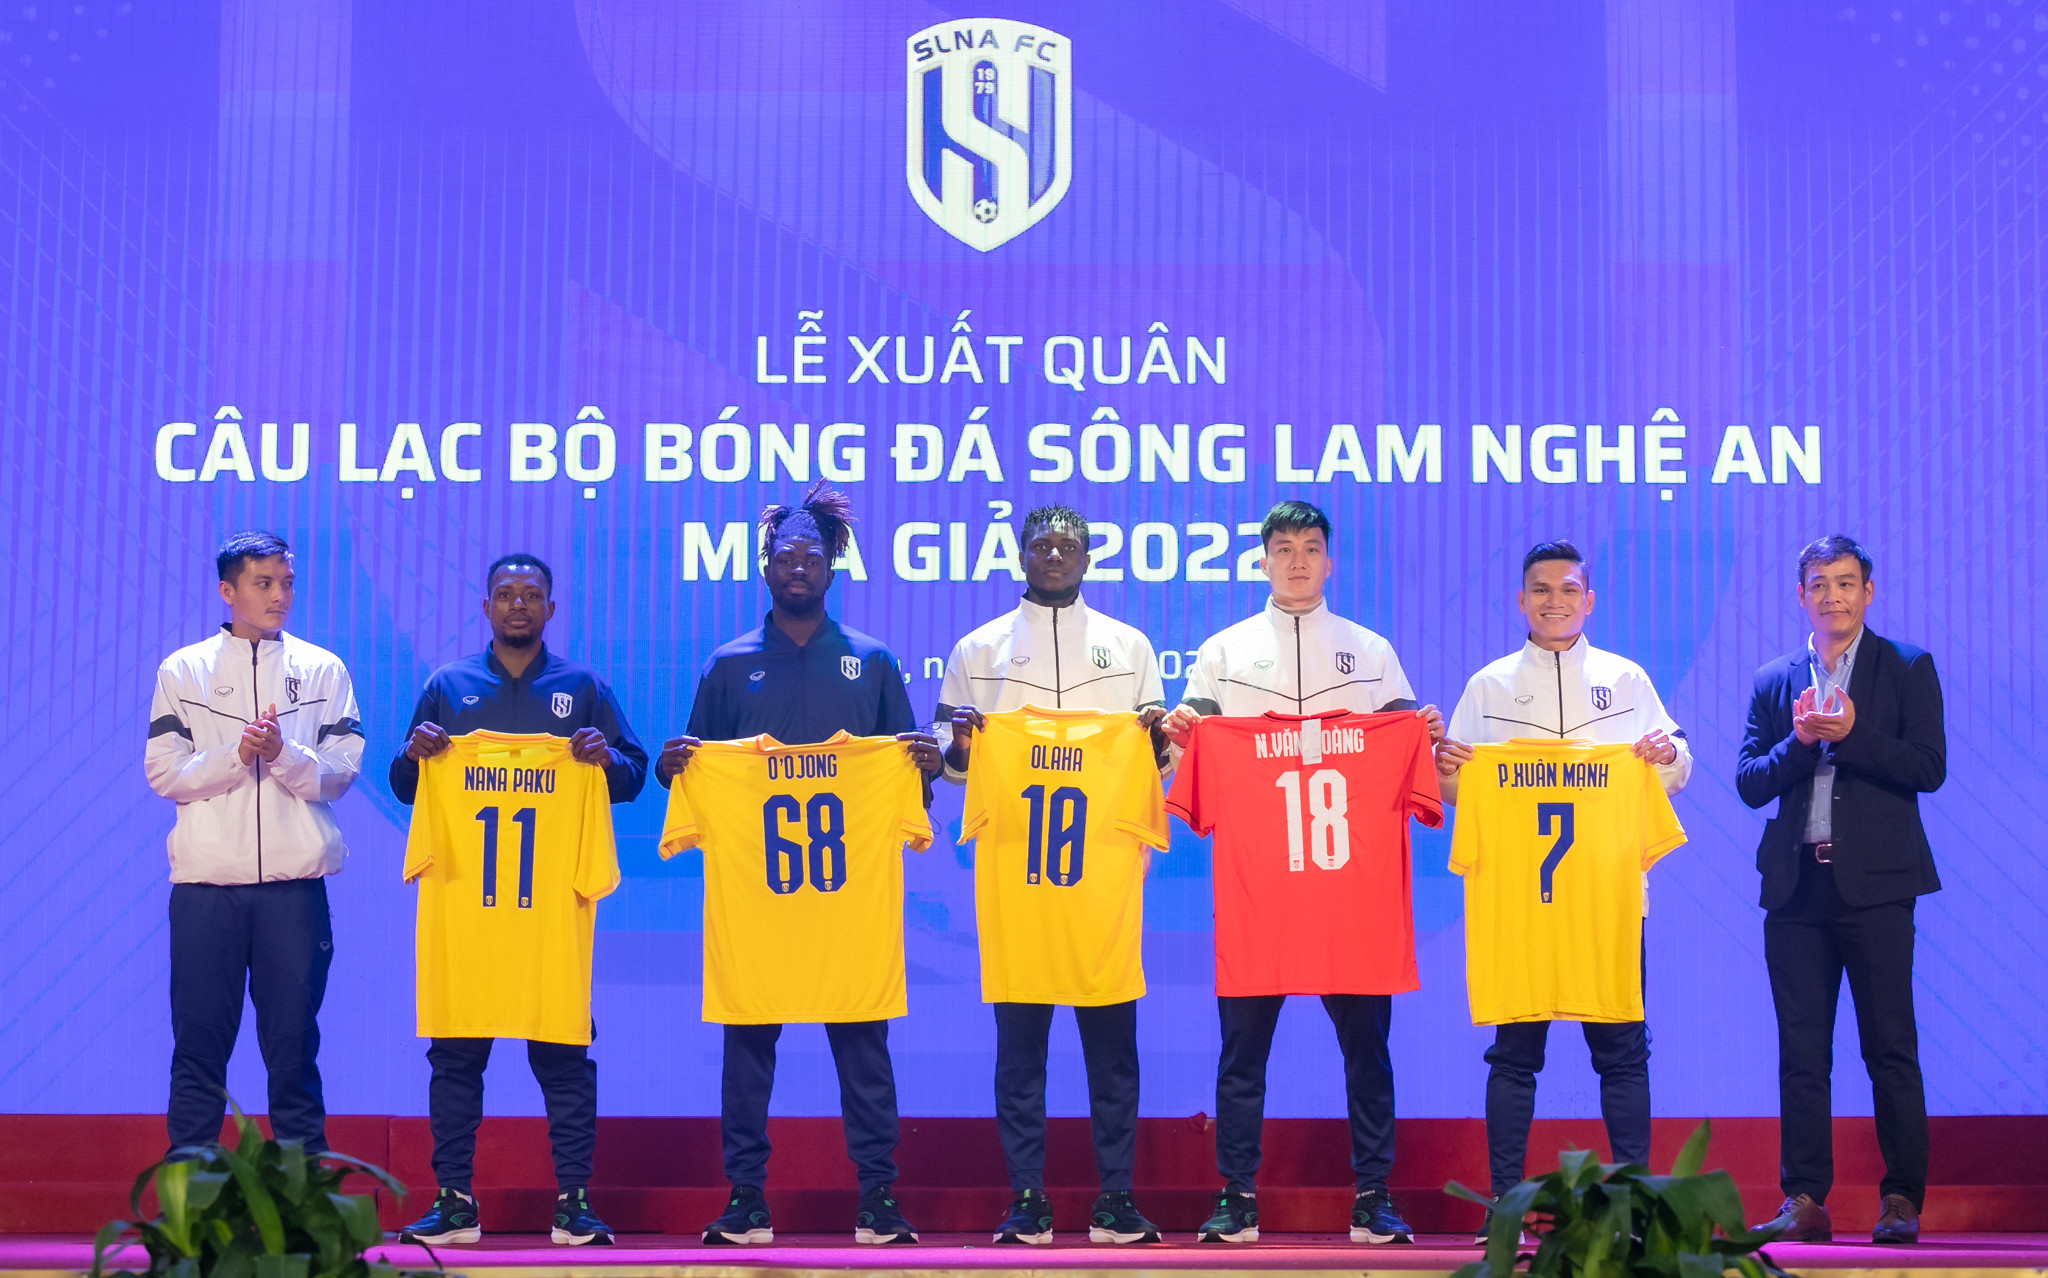 CLB SLNA trao áo đấu cho các cầu thủ gia hạn hợp đồng và ký kết mới trong mùa giải 2022. Ảnh: Đức Anh